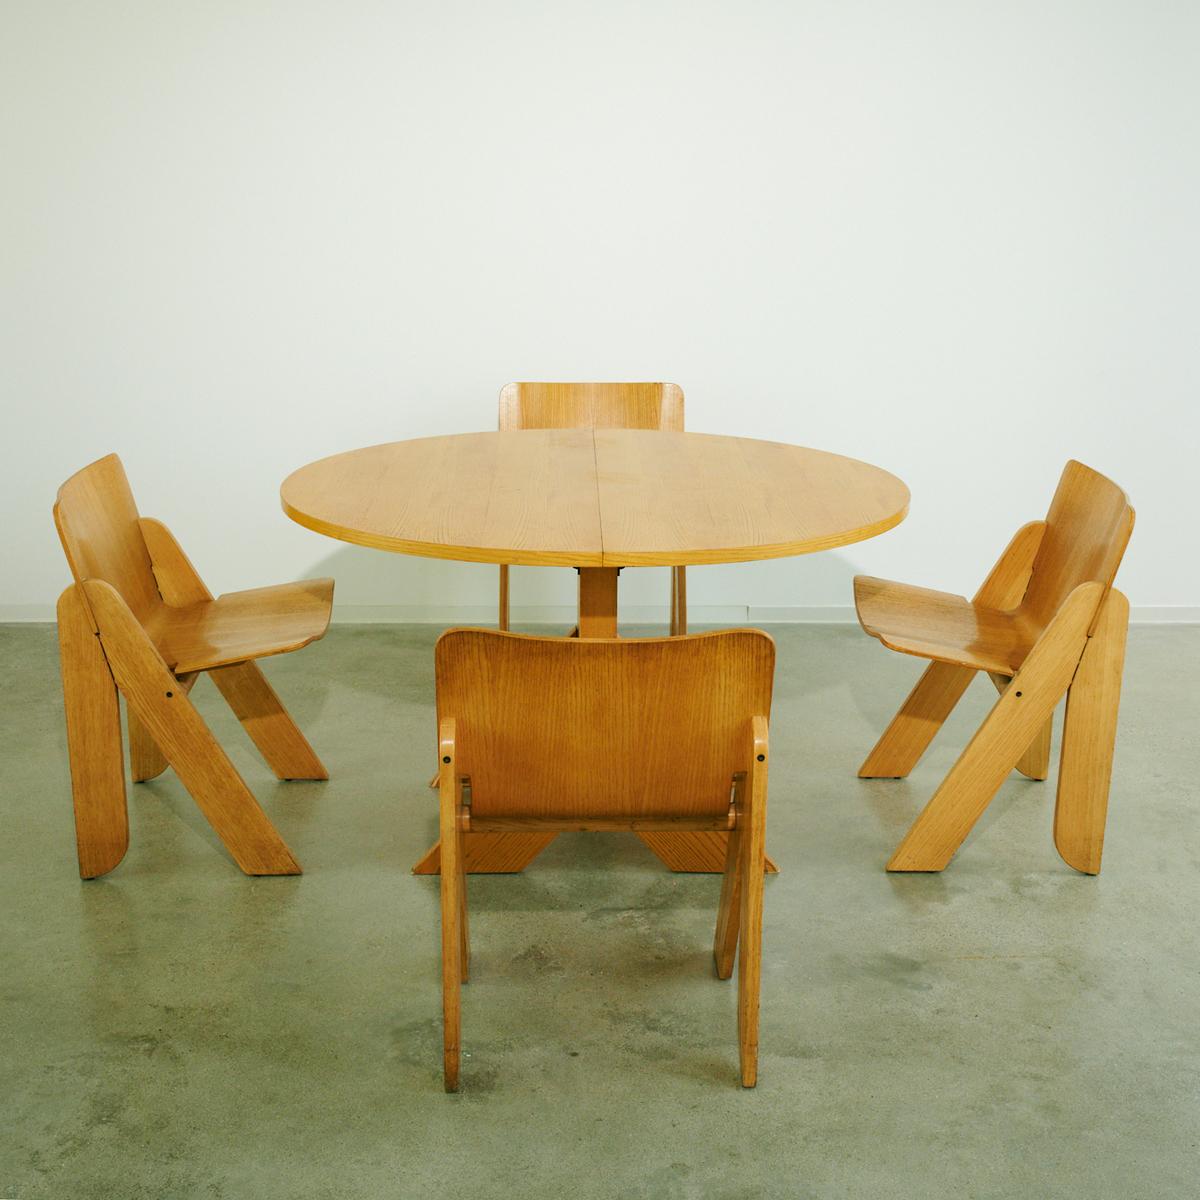 Holztisch und vier Stühle von Gigi Sabadin, um 1970

Eine Serie von vier Stühlen mit umgekehrten V-förmigen Beinen, die die Sitzschalen aus thermogeformtem Holz tragen.
Stilwood Ausgabe. CIRCA 1970
Tisch 72 x 120 x 100 cm
Tisch mit